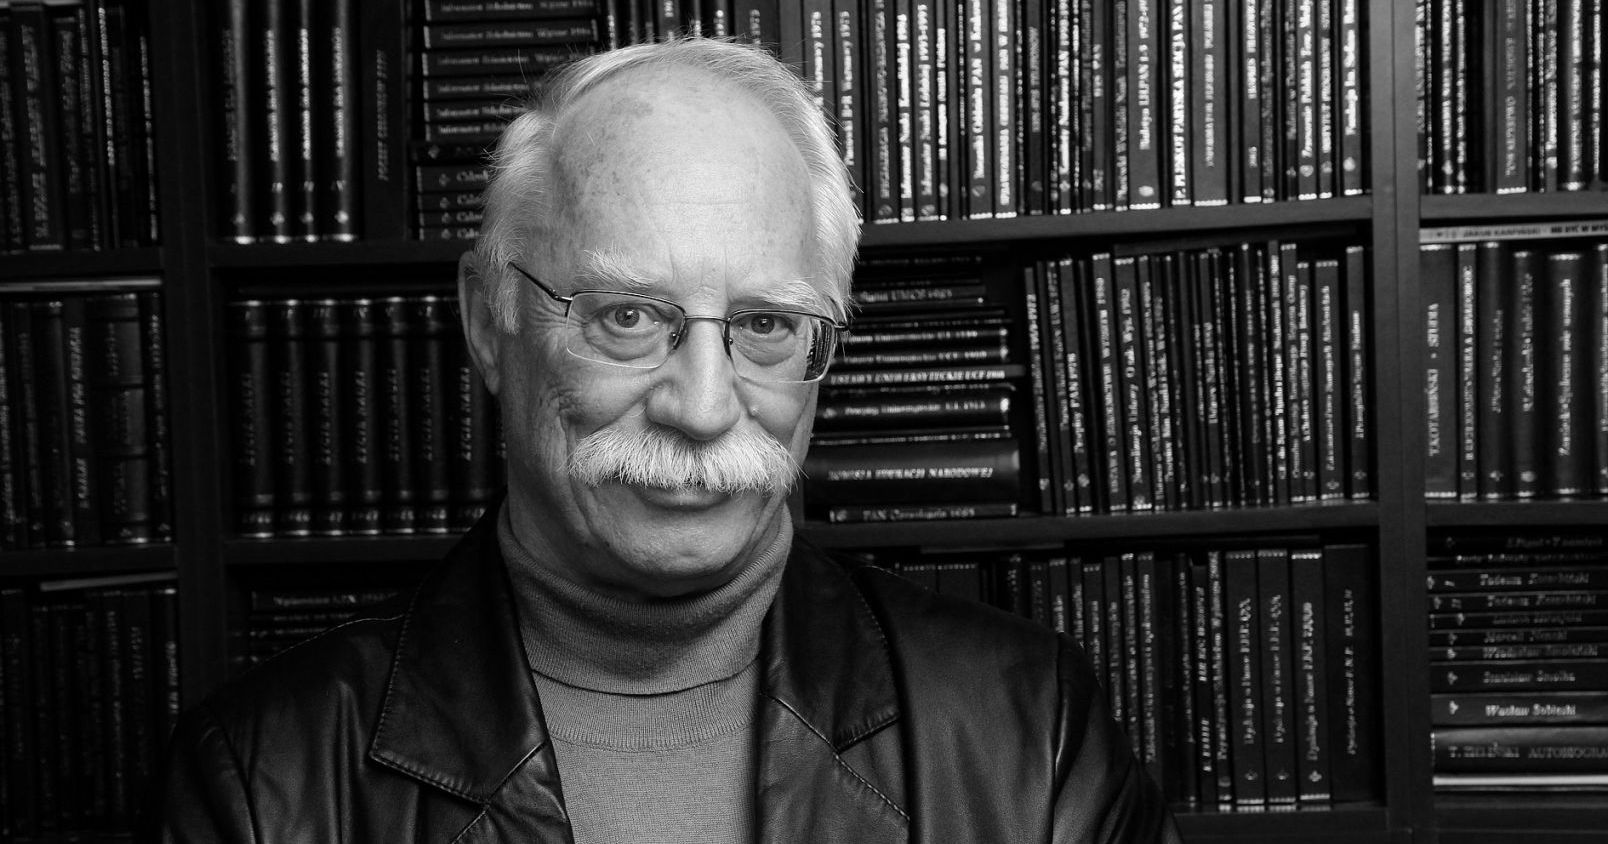  Portret prof. Piotra Hübnera na tle biblioteczki z książkami